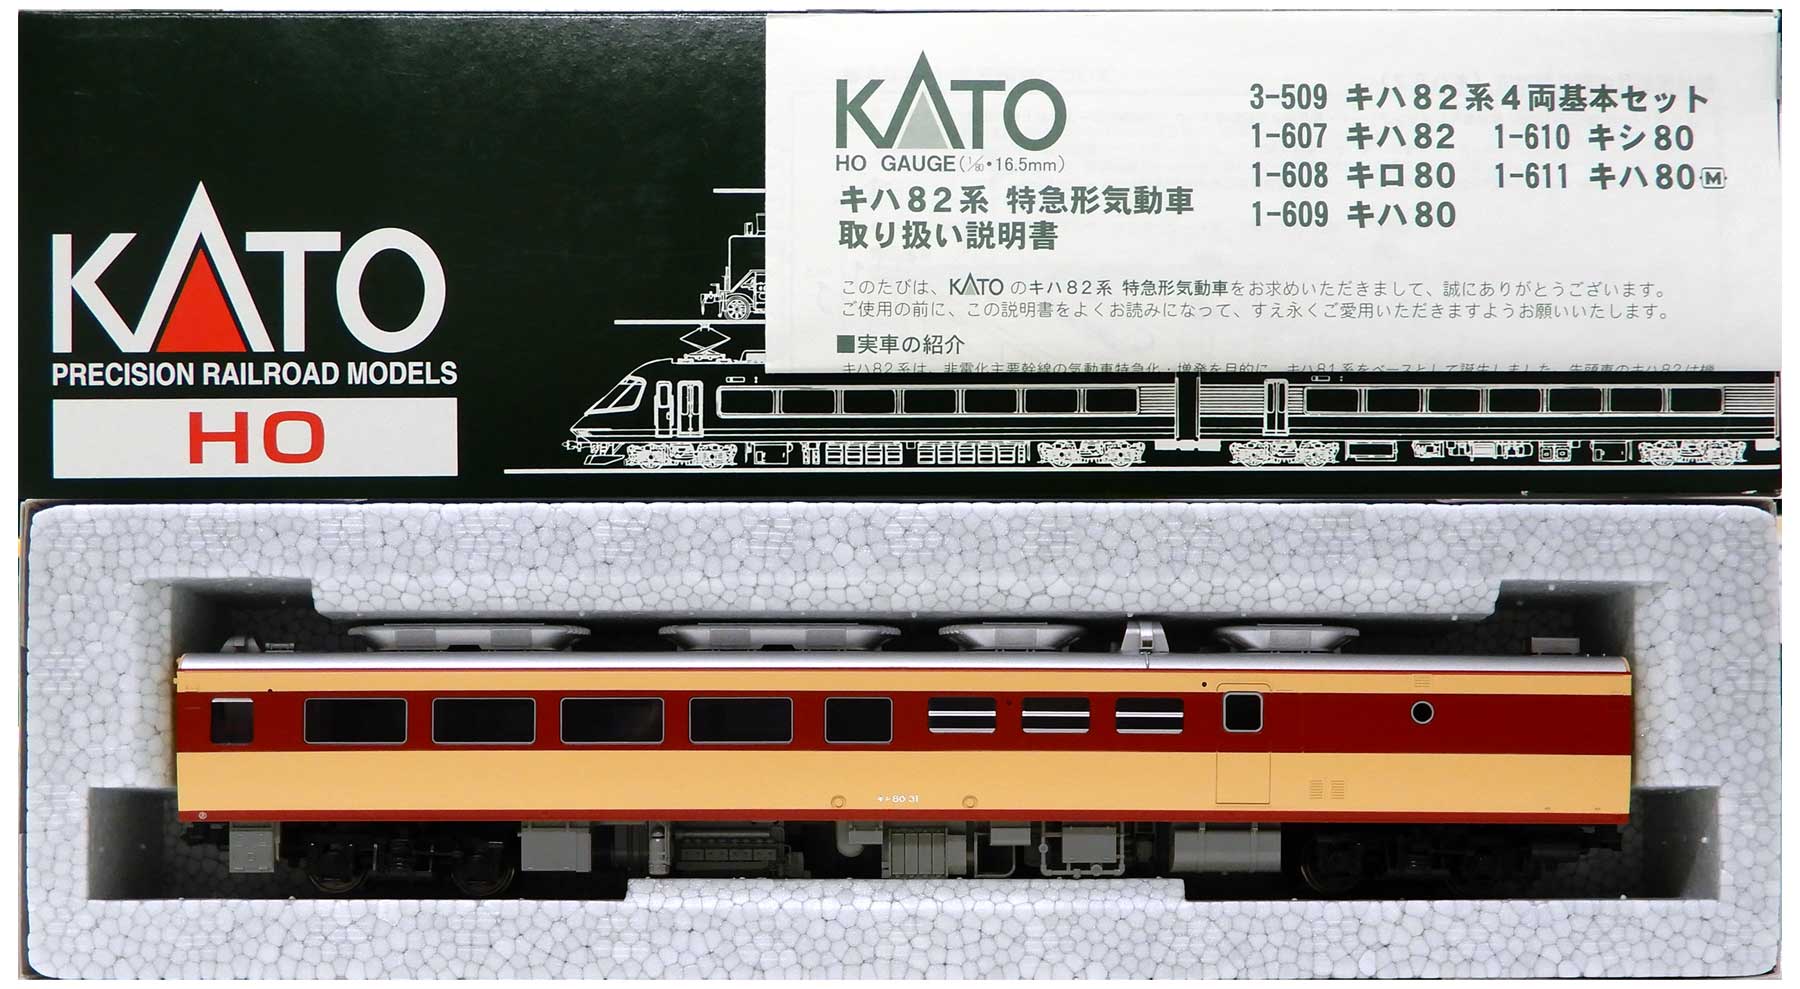 KATO 608 キハ80 609 キロ80 セット売り - 鉄道模型